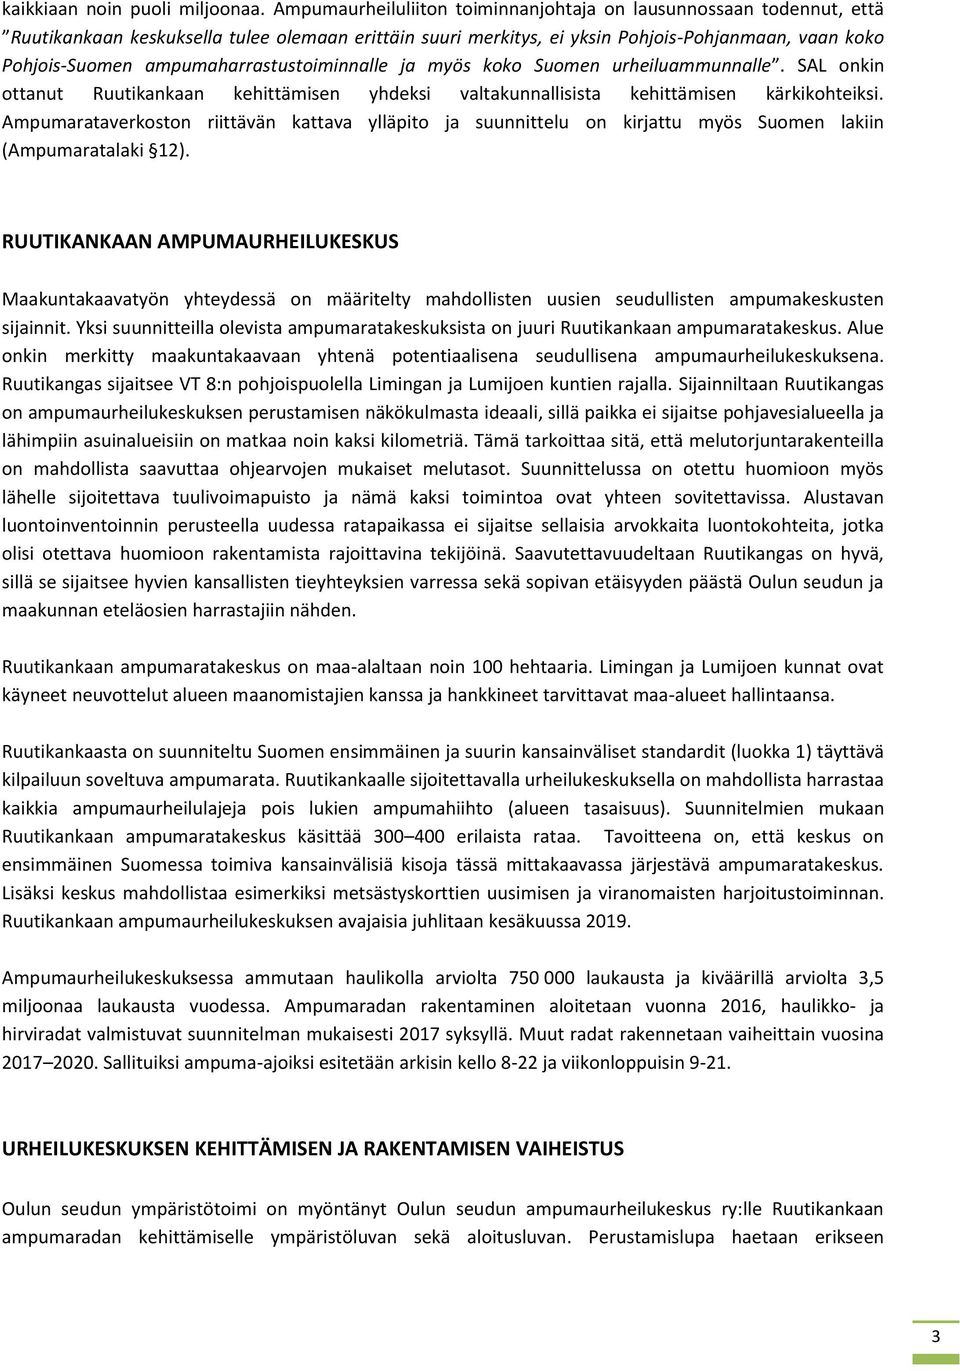 ampumaharrastustoiminnalle ja myös koko Suomen urheiluammunnalle. SAL onkin ottanut Ruutikankaan kehittämisen yhdeksi valtakunnallisista kehittämisen kärkikohteiksi.